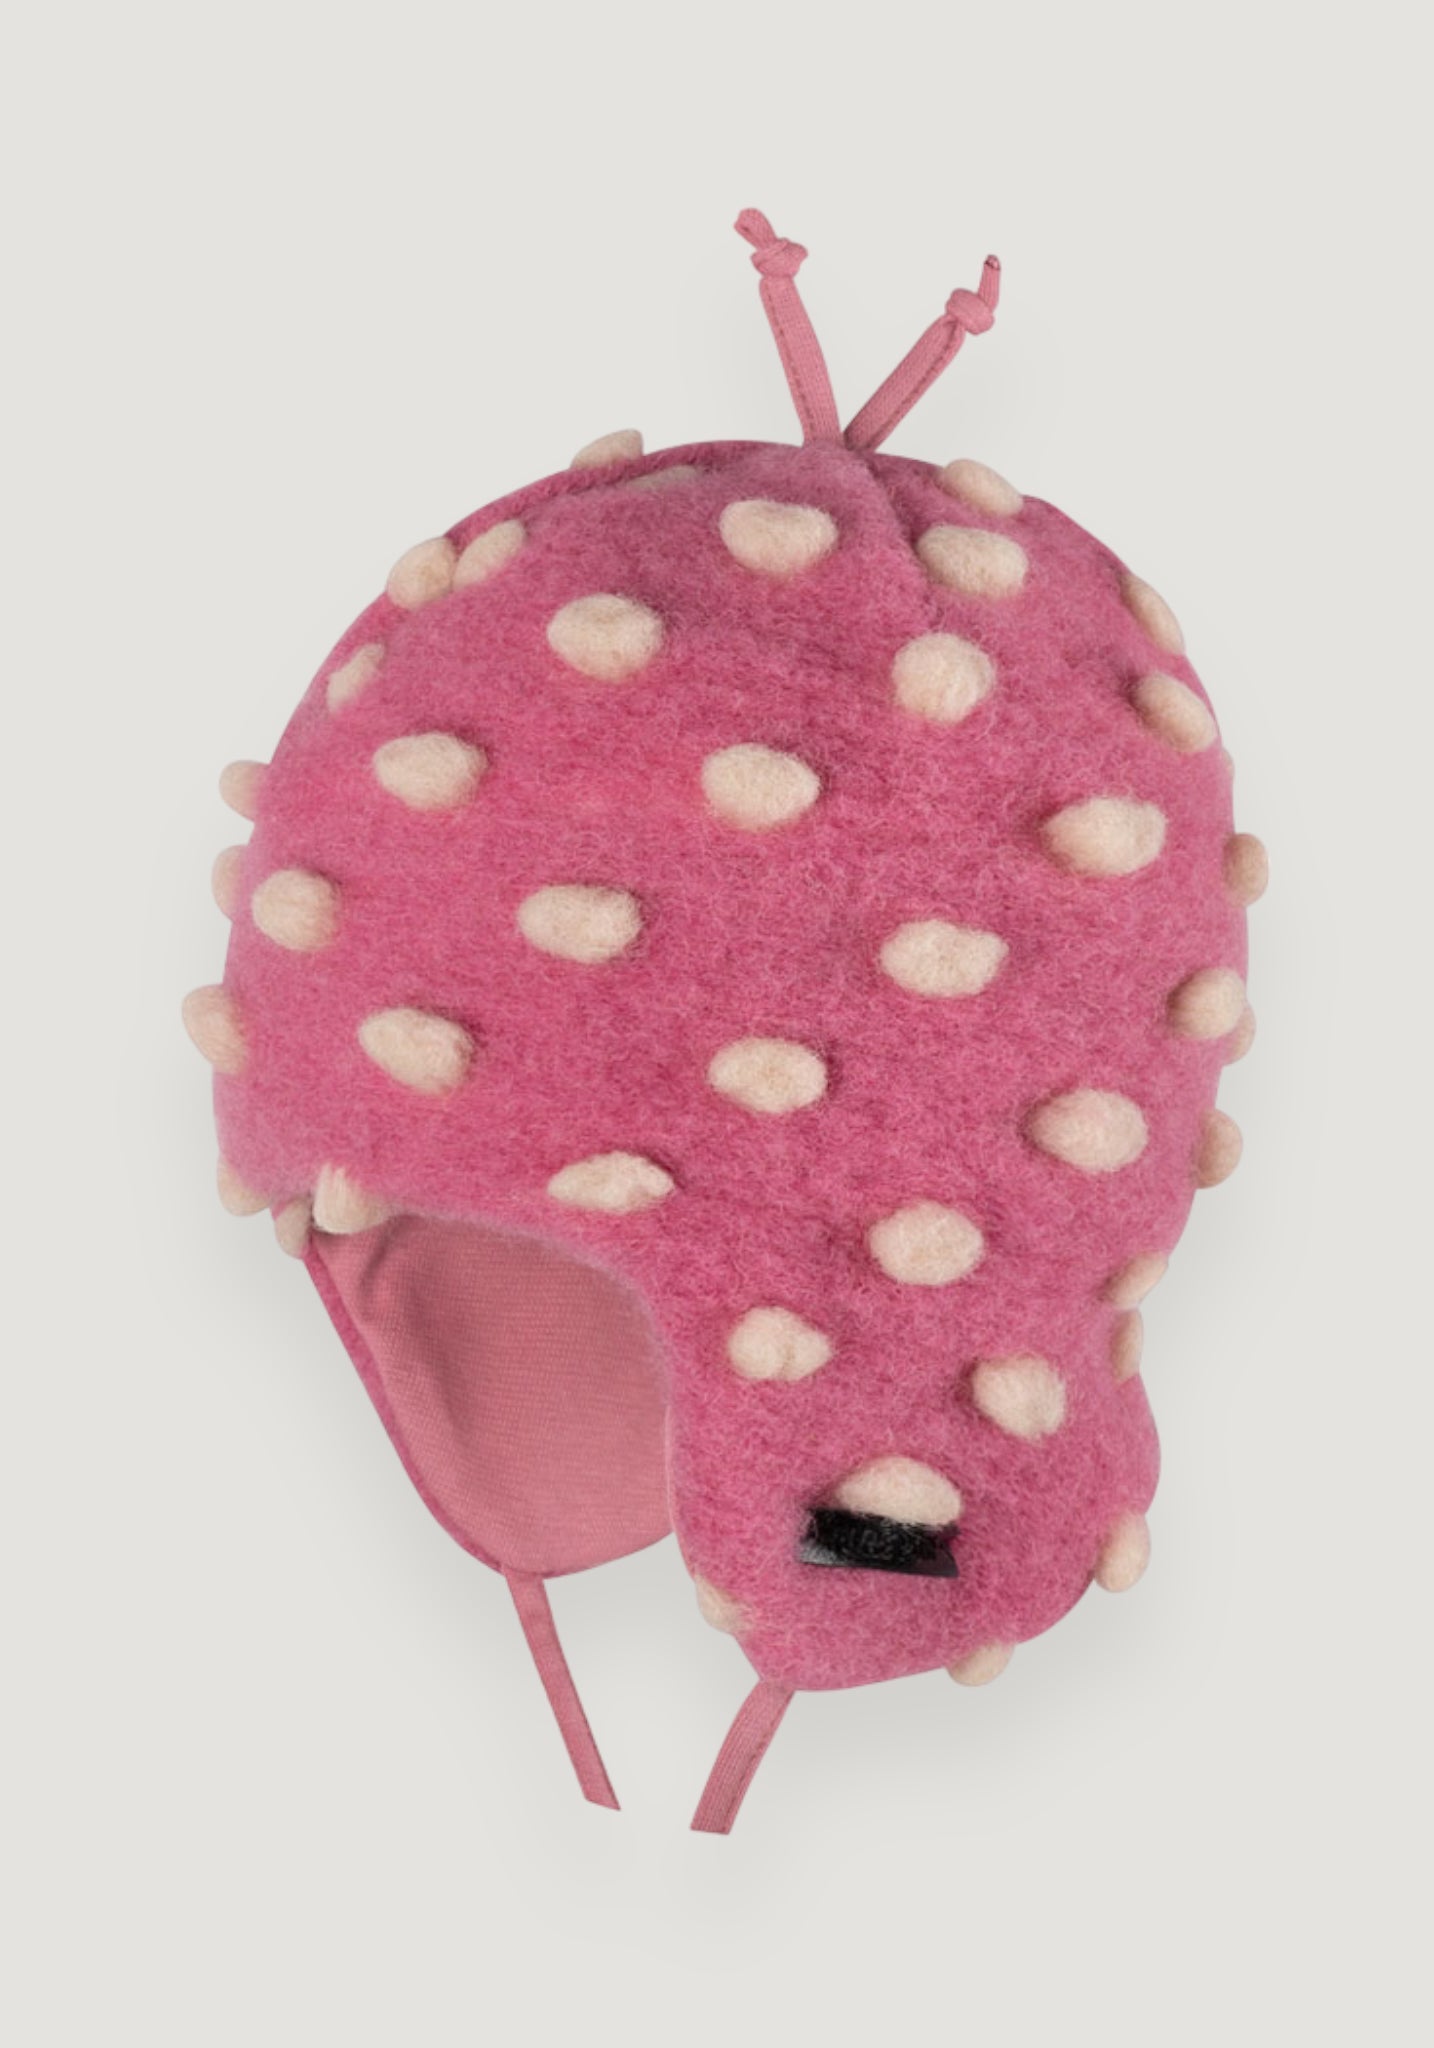 Căciulă din lână fiartă - Dusty Pink 43 cm